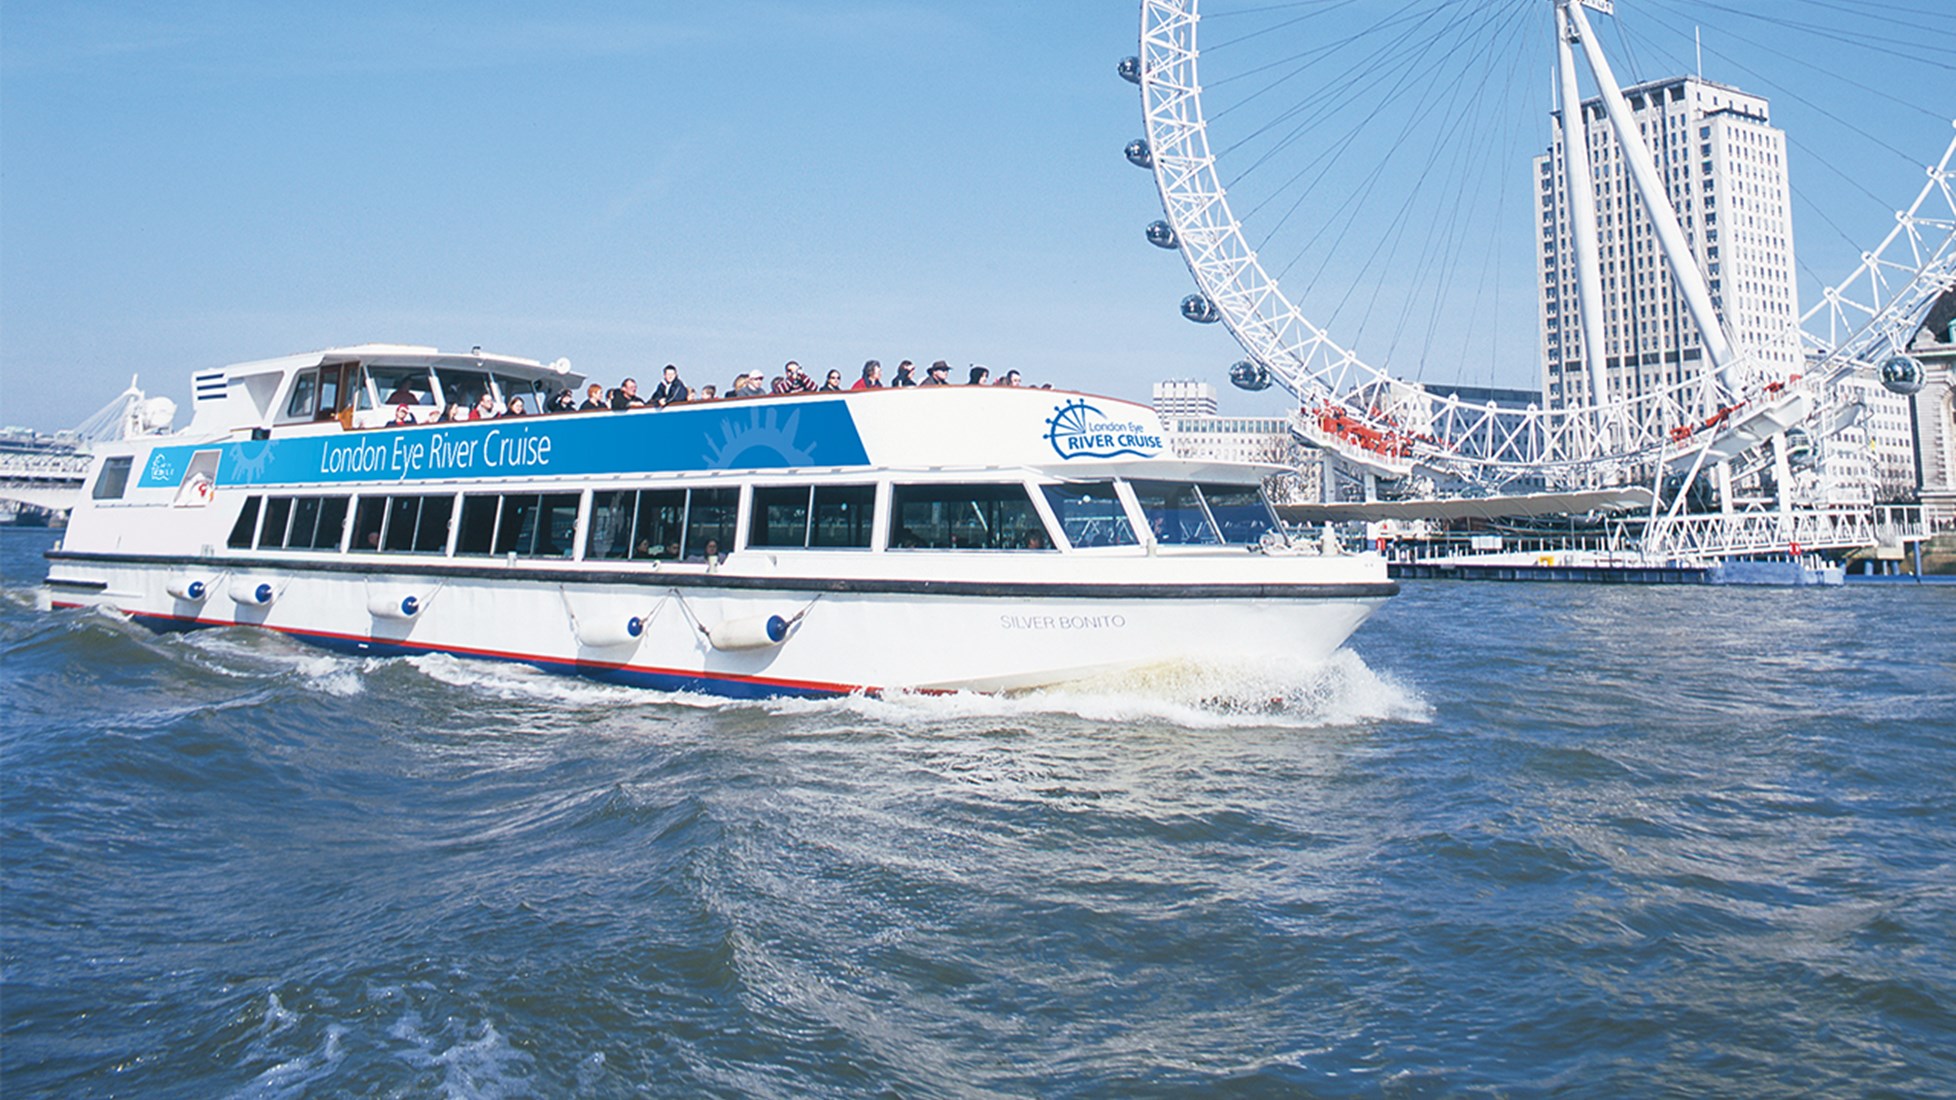 london eye boat tour